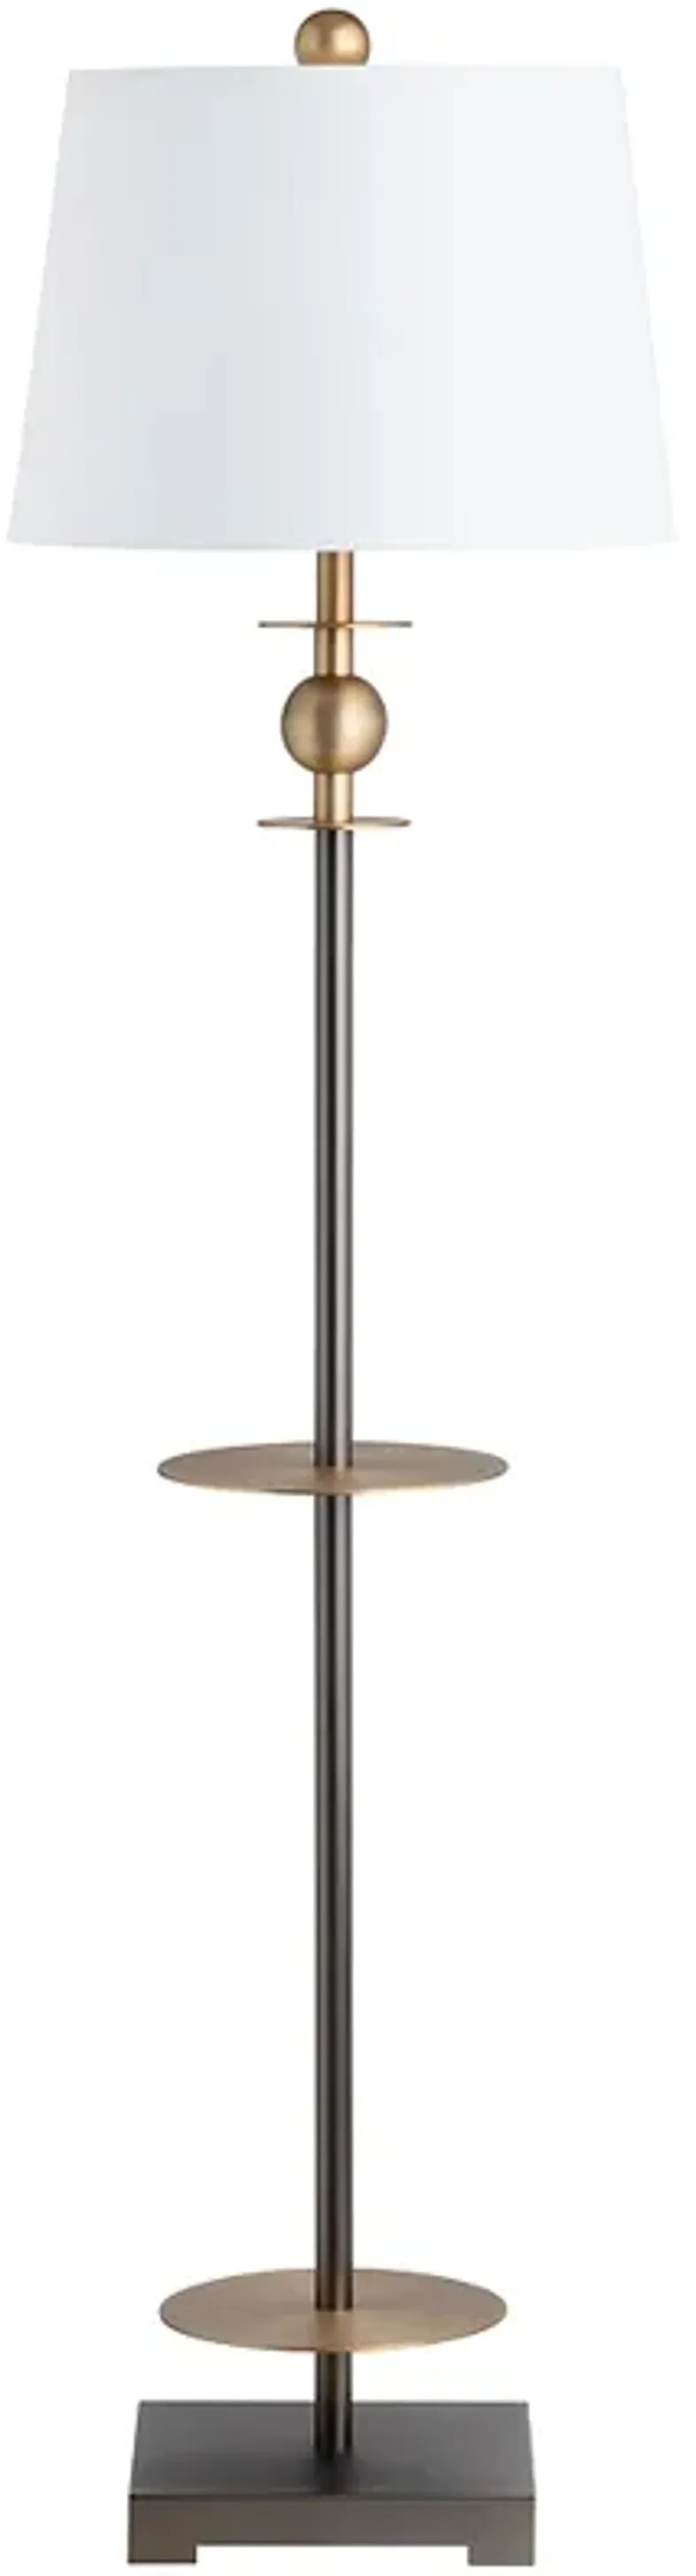 Crestview Collection Chapman 64" High Metal Floor Lamp